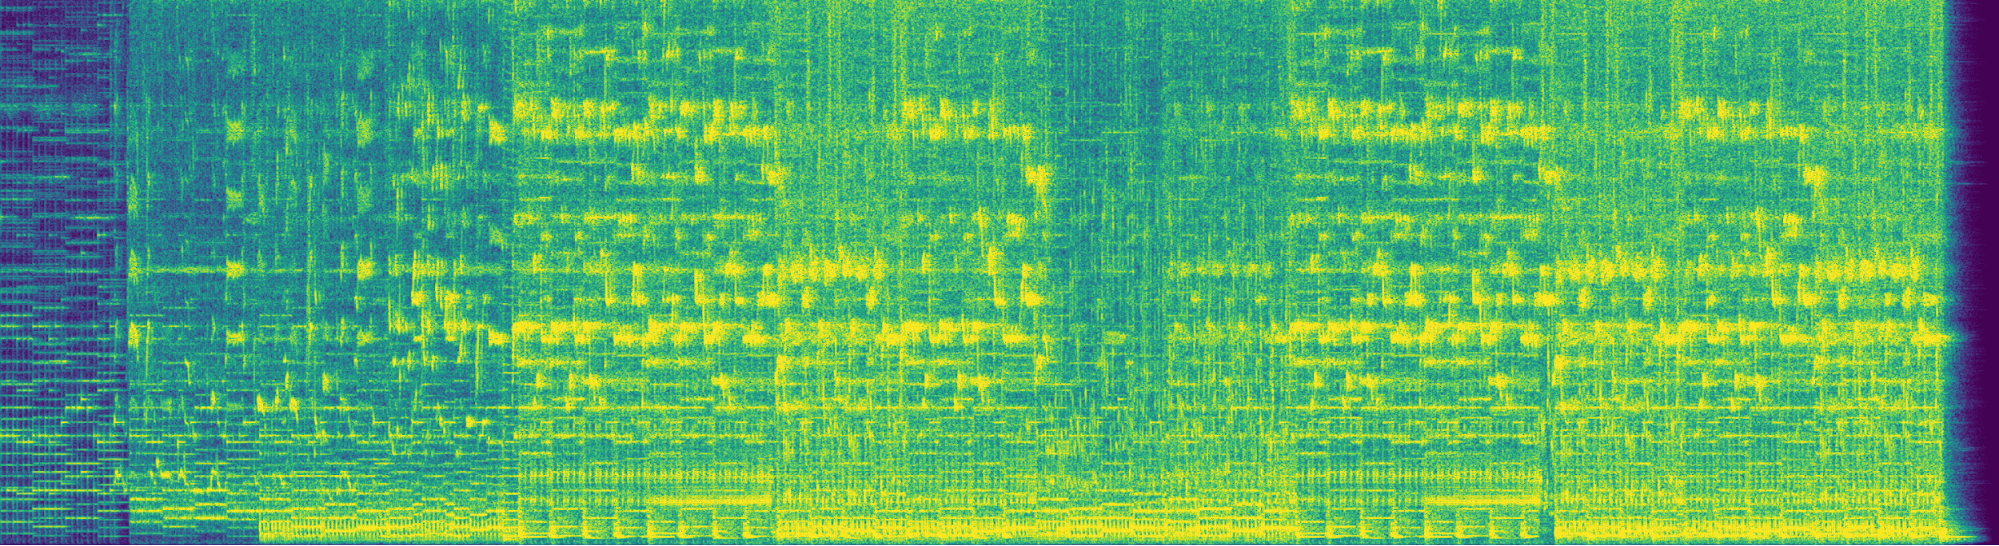 C# Spectrogram example